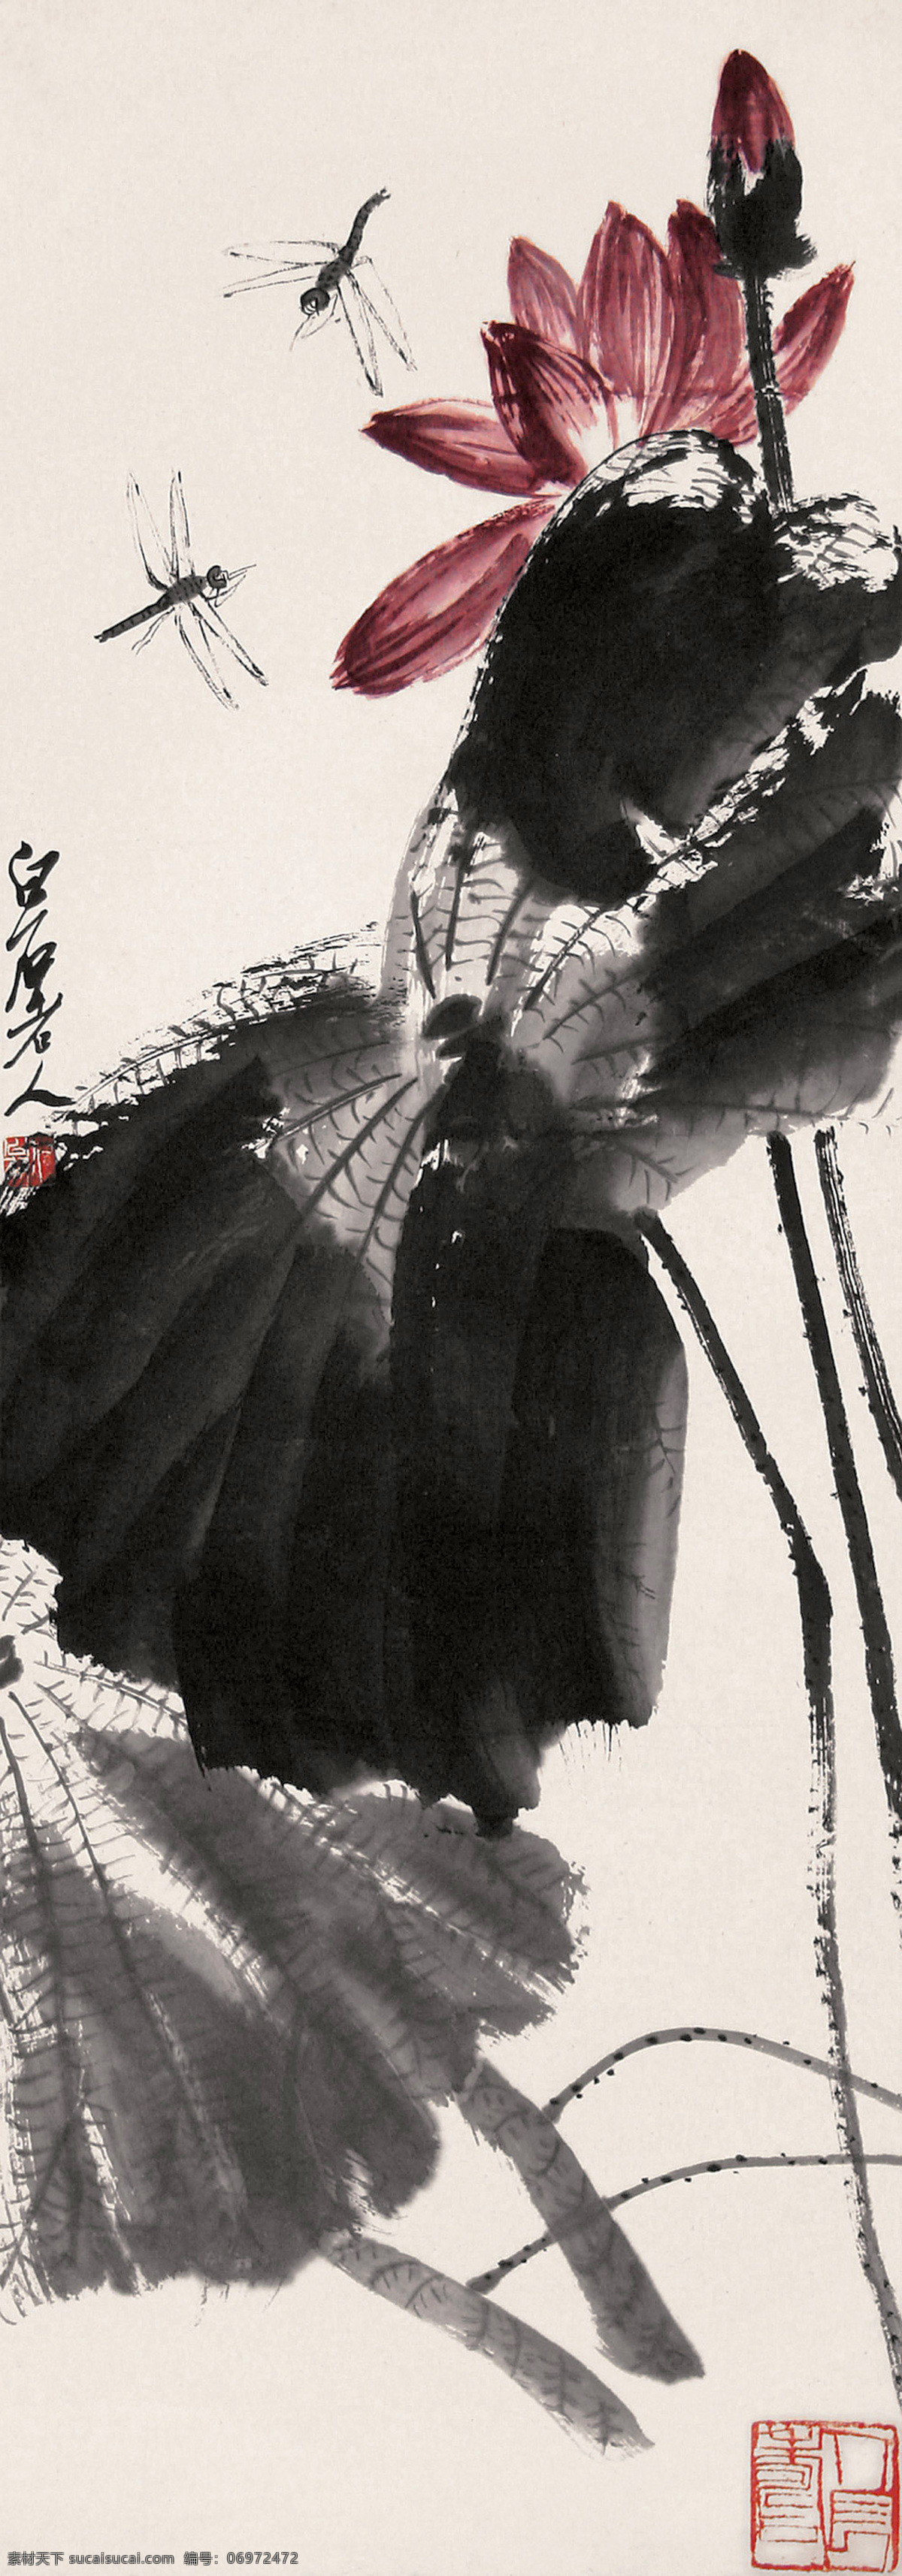 荷花蜻蜓 国画 齐白石 荷花 红荷 荷塘 蜻蜓 绘画书法 文化艺术 花卉 草虫